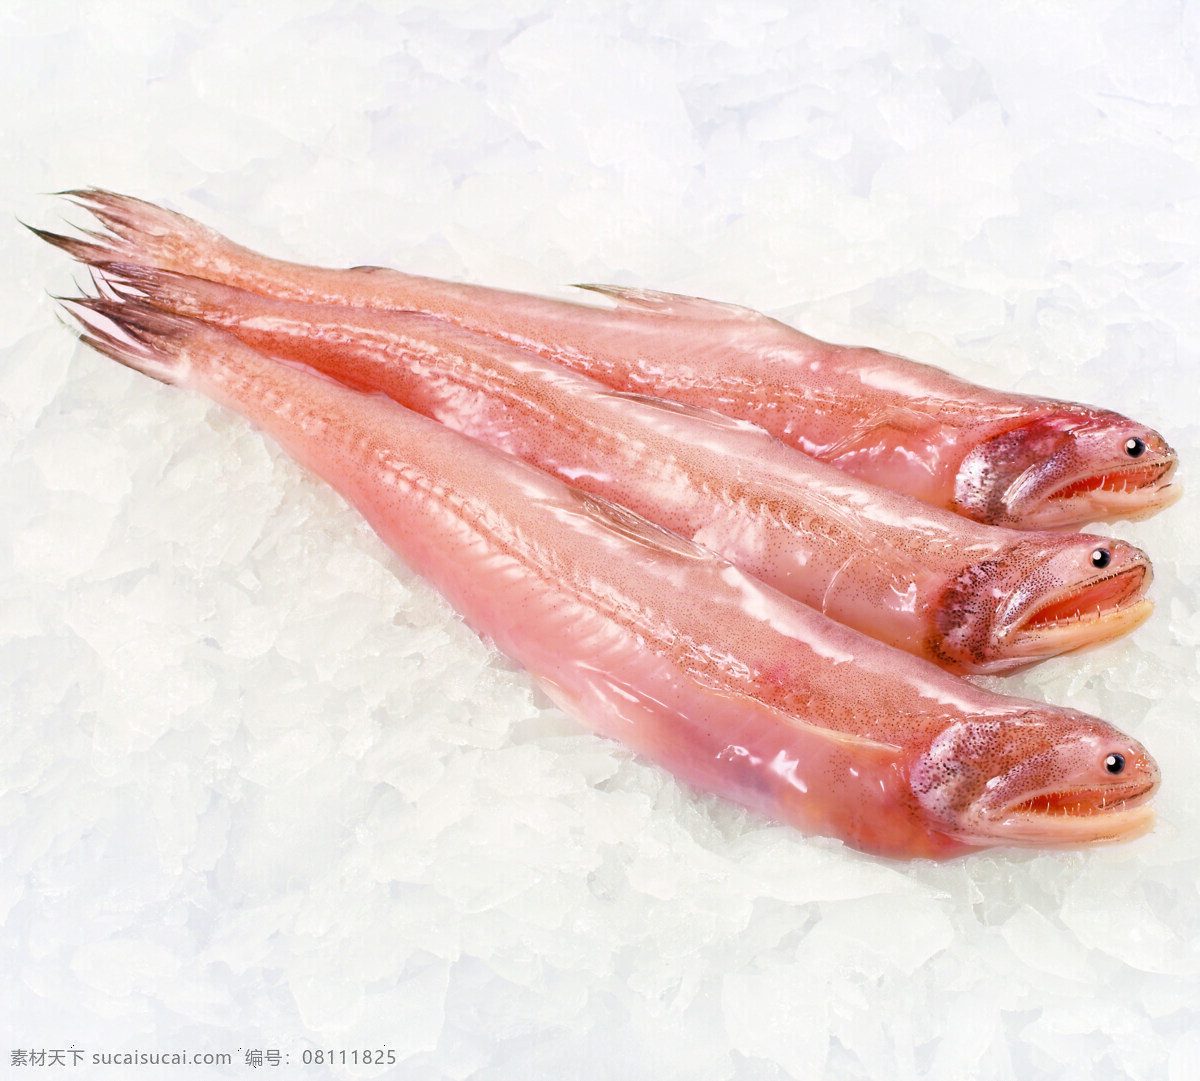 龙头鱼 水产 海鲜 肉 食物原料 餐饮美食